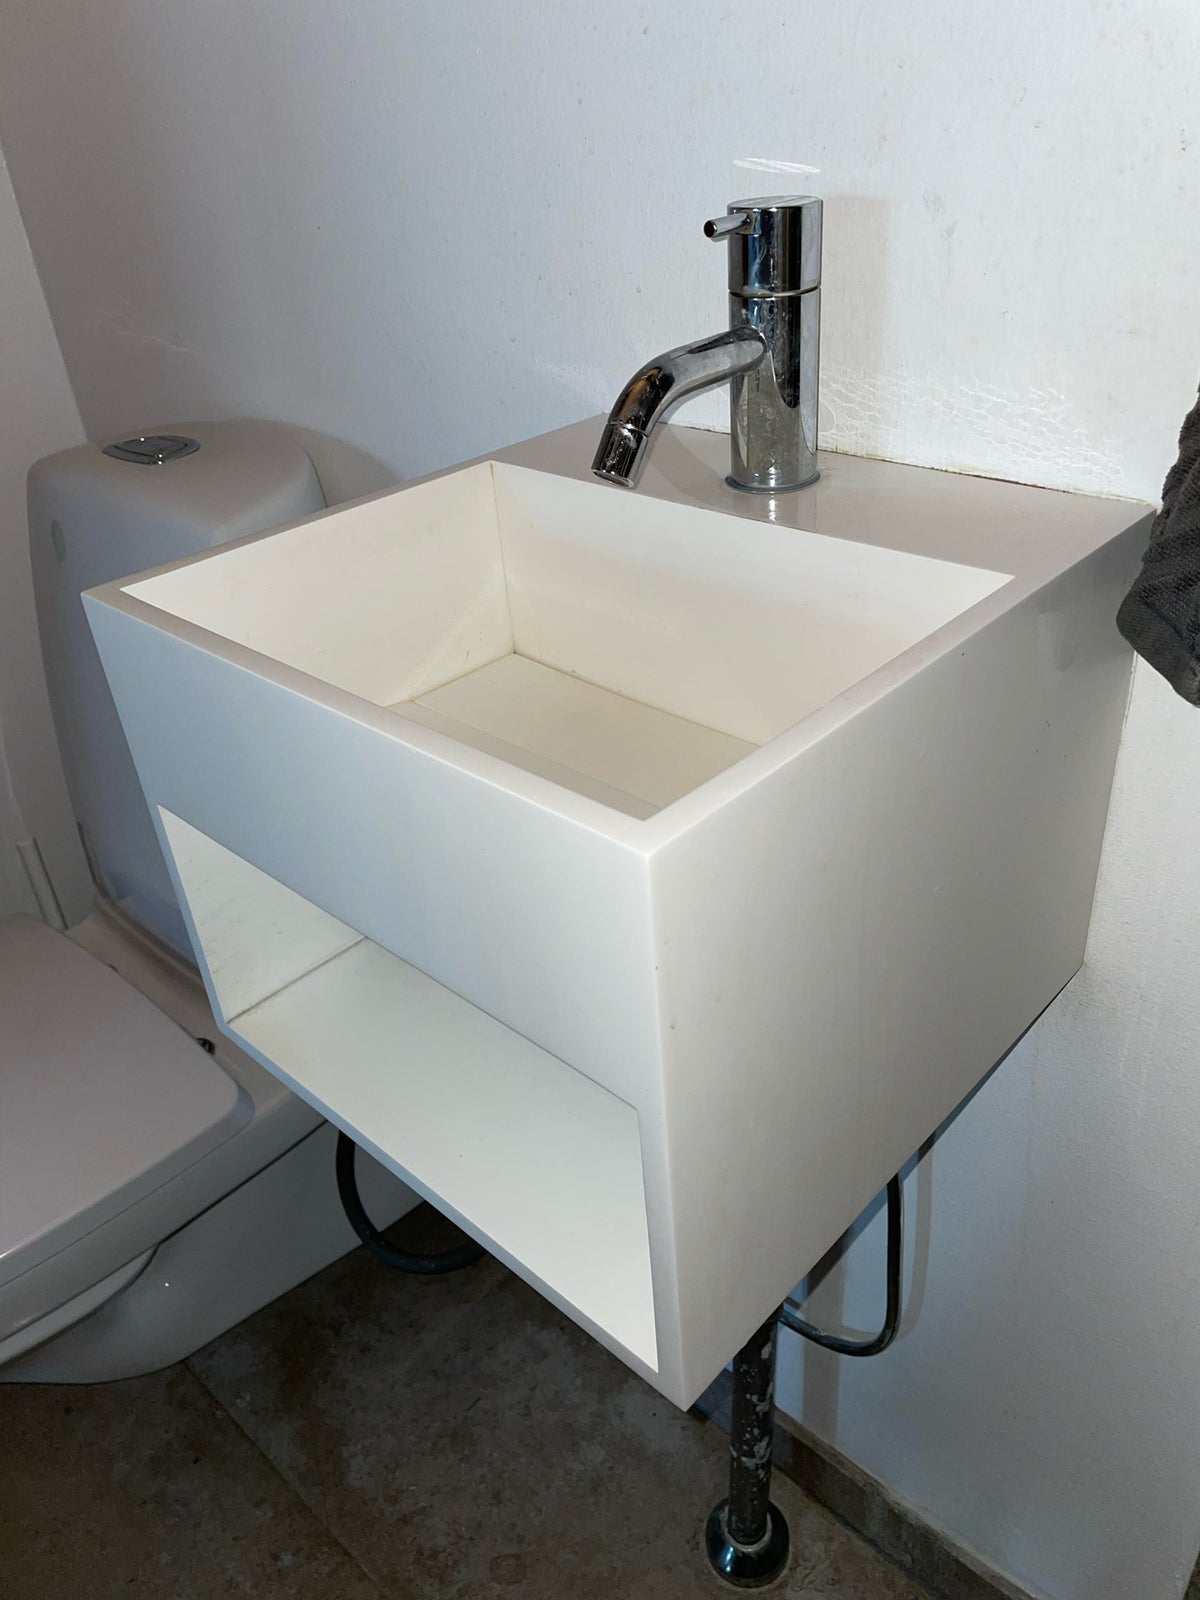 Håndvask , Pulcher Denmark